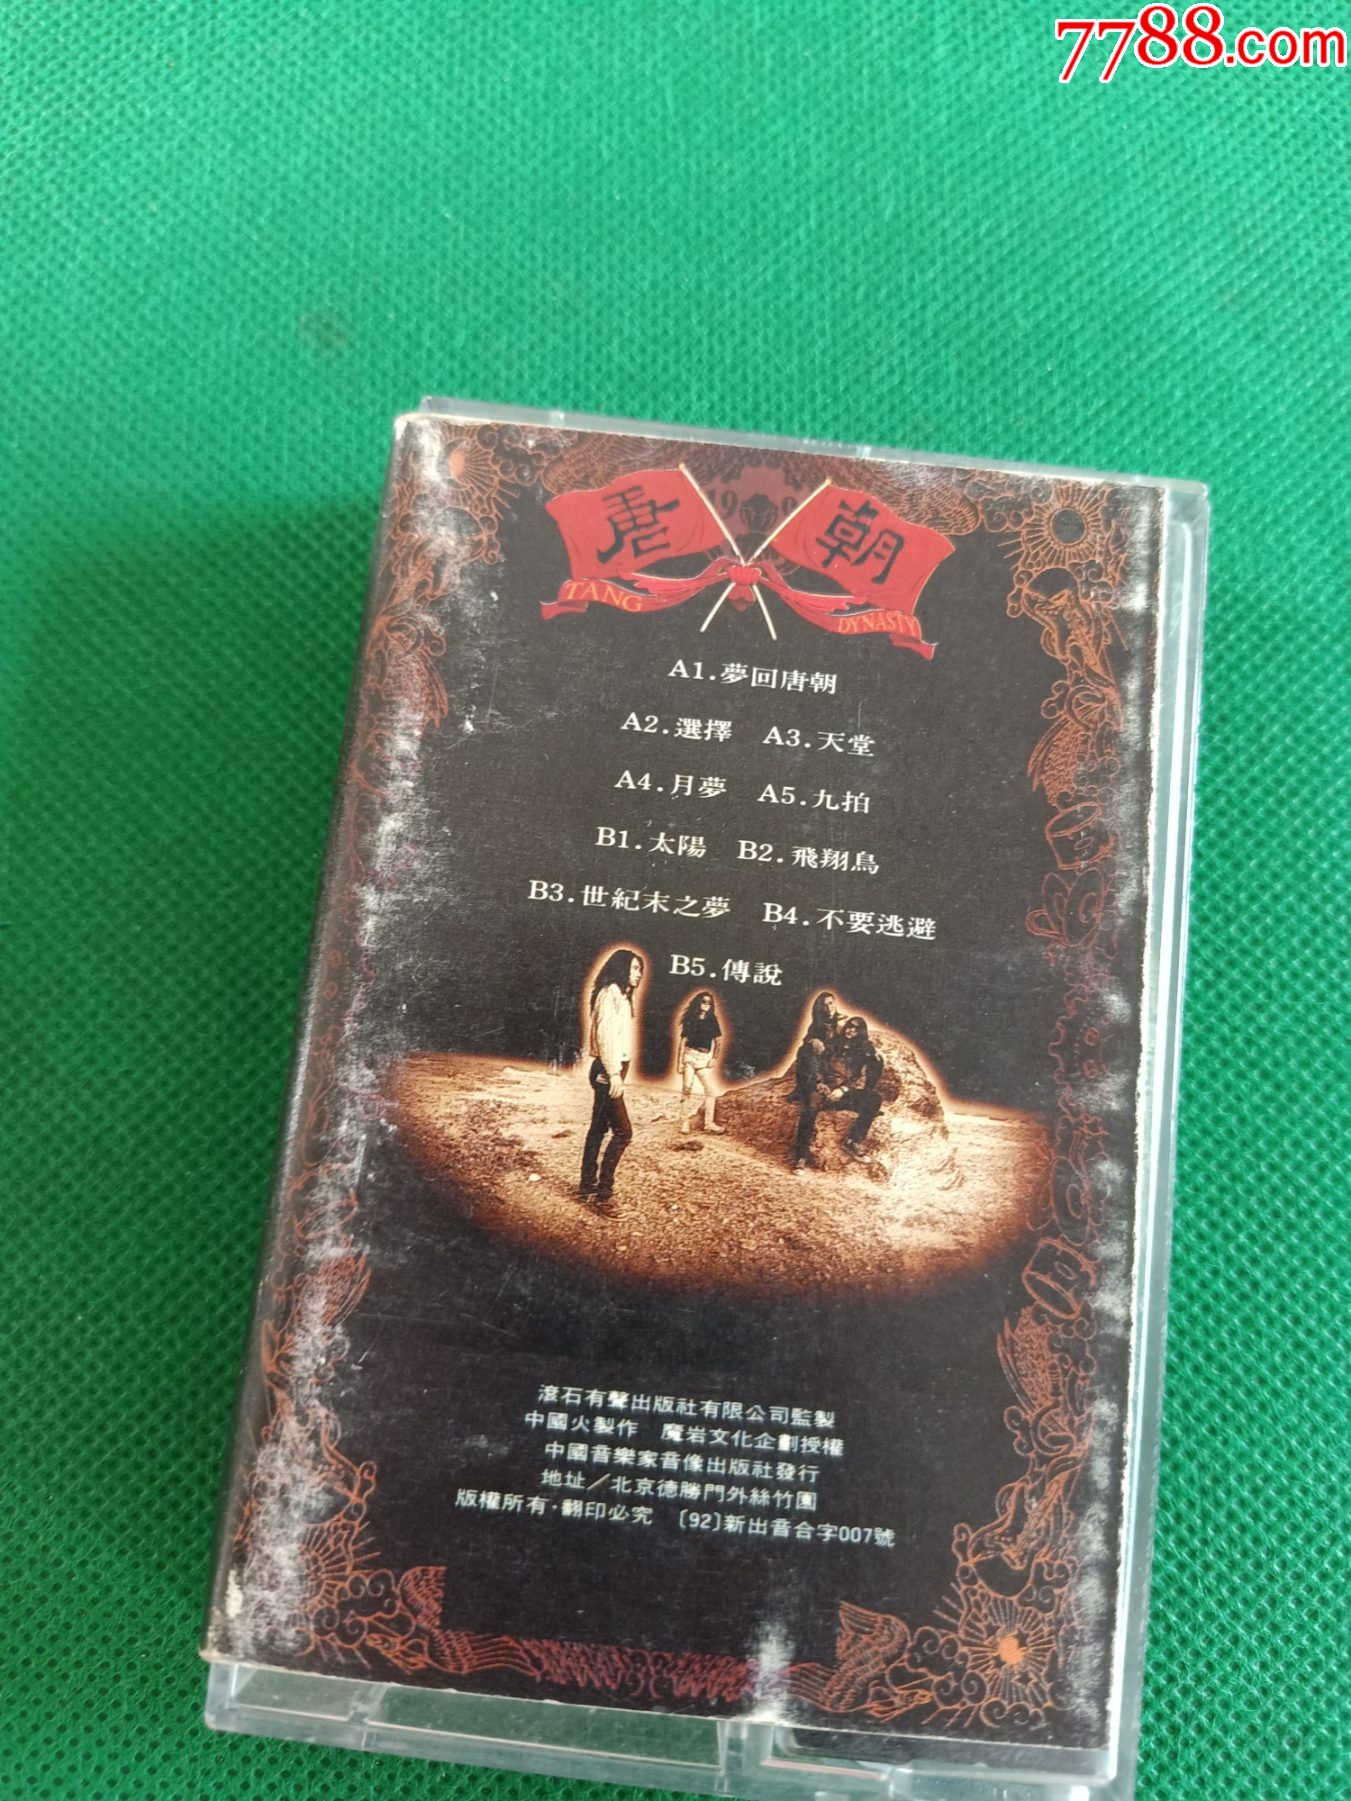 《唐朝乐队》磁带,中国火制作,魔岩授权,中国音乐家音像出版